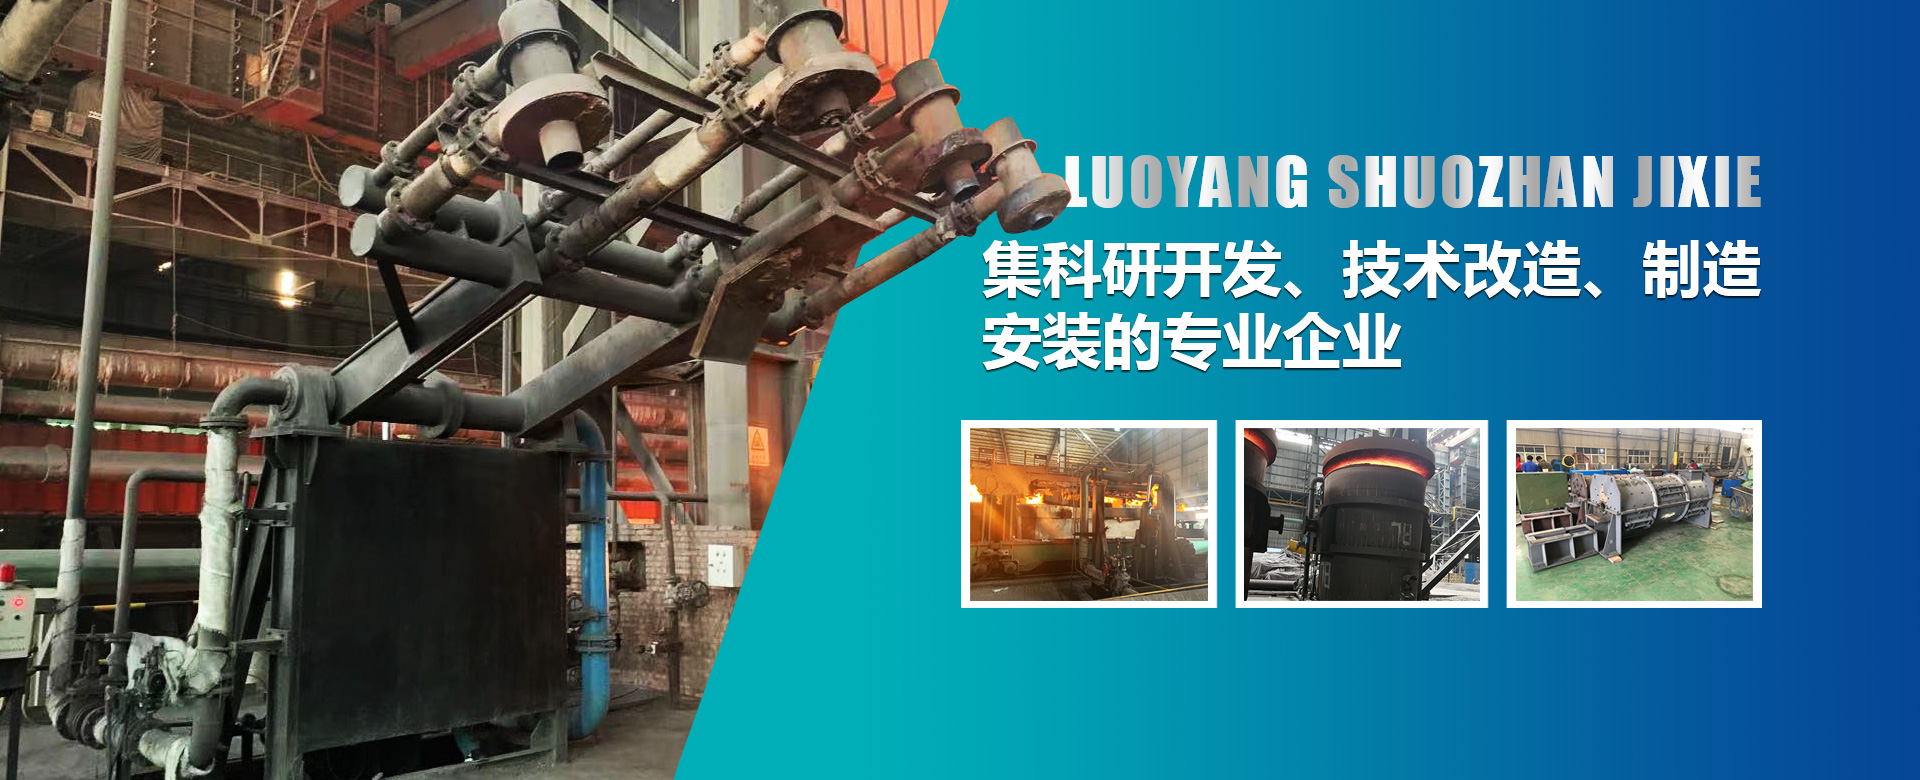 烘烤器是鋼鐵廠生產的必須設備，也是鋼鐵生產過程中能耗較大的設備